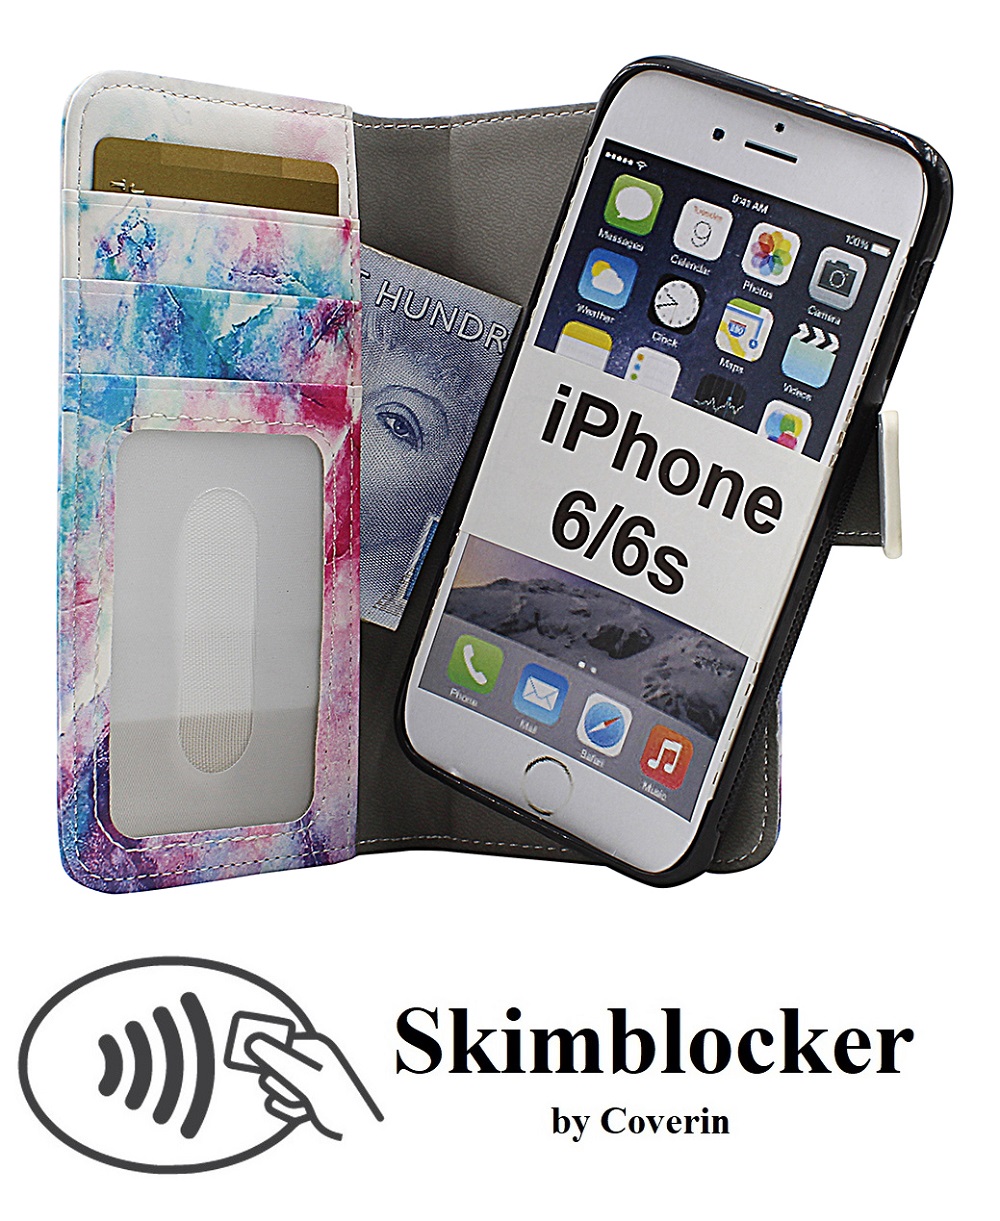 Skimblocker Magnet Designwallet iPhone SE (2nd Generation)